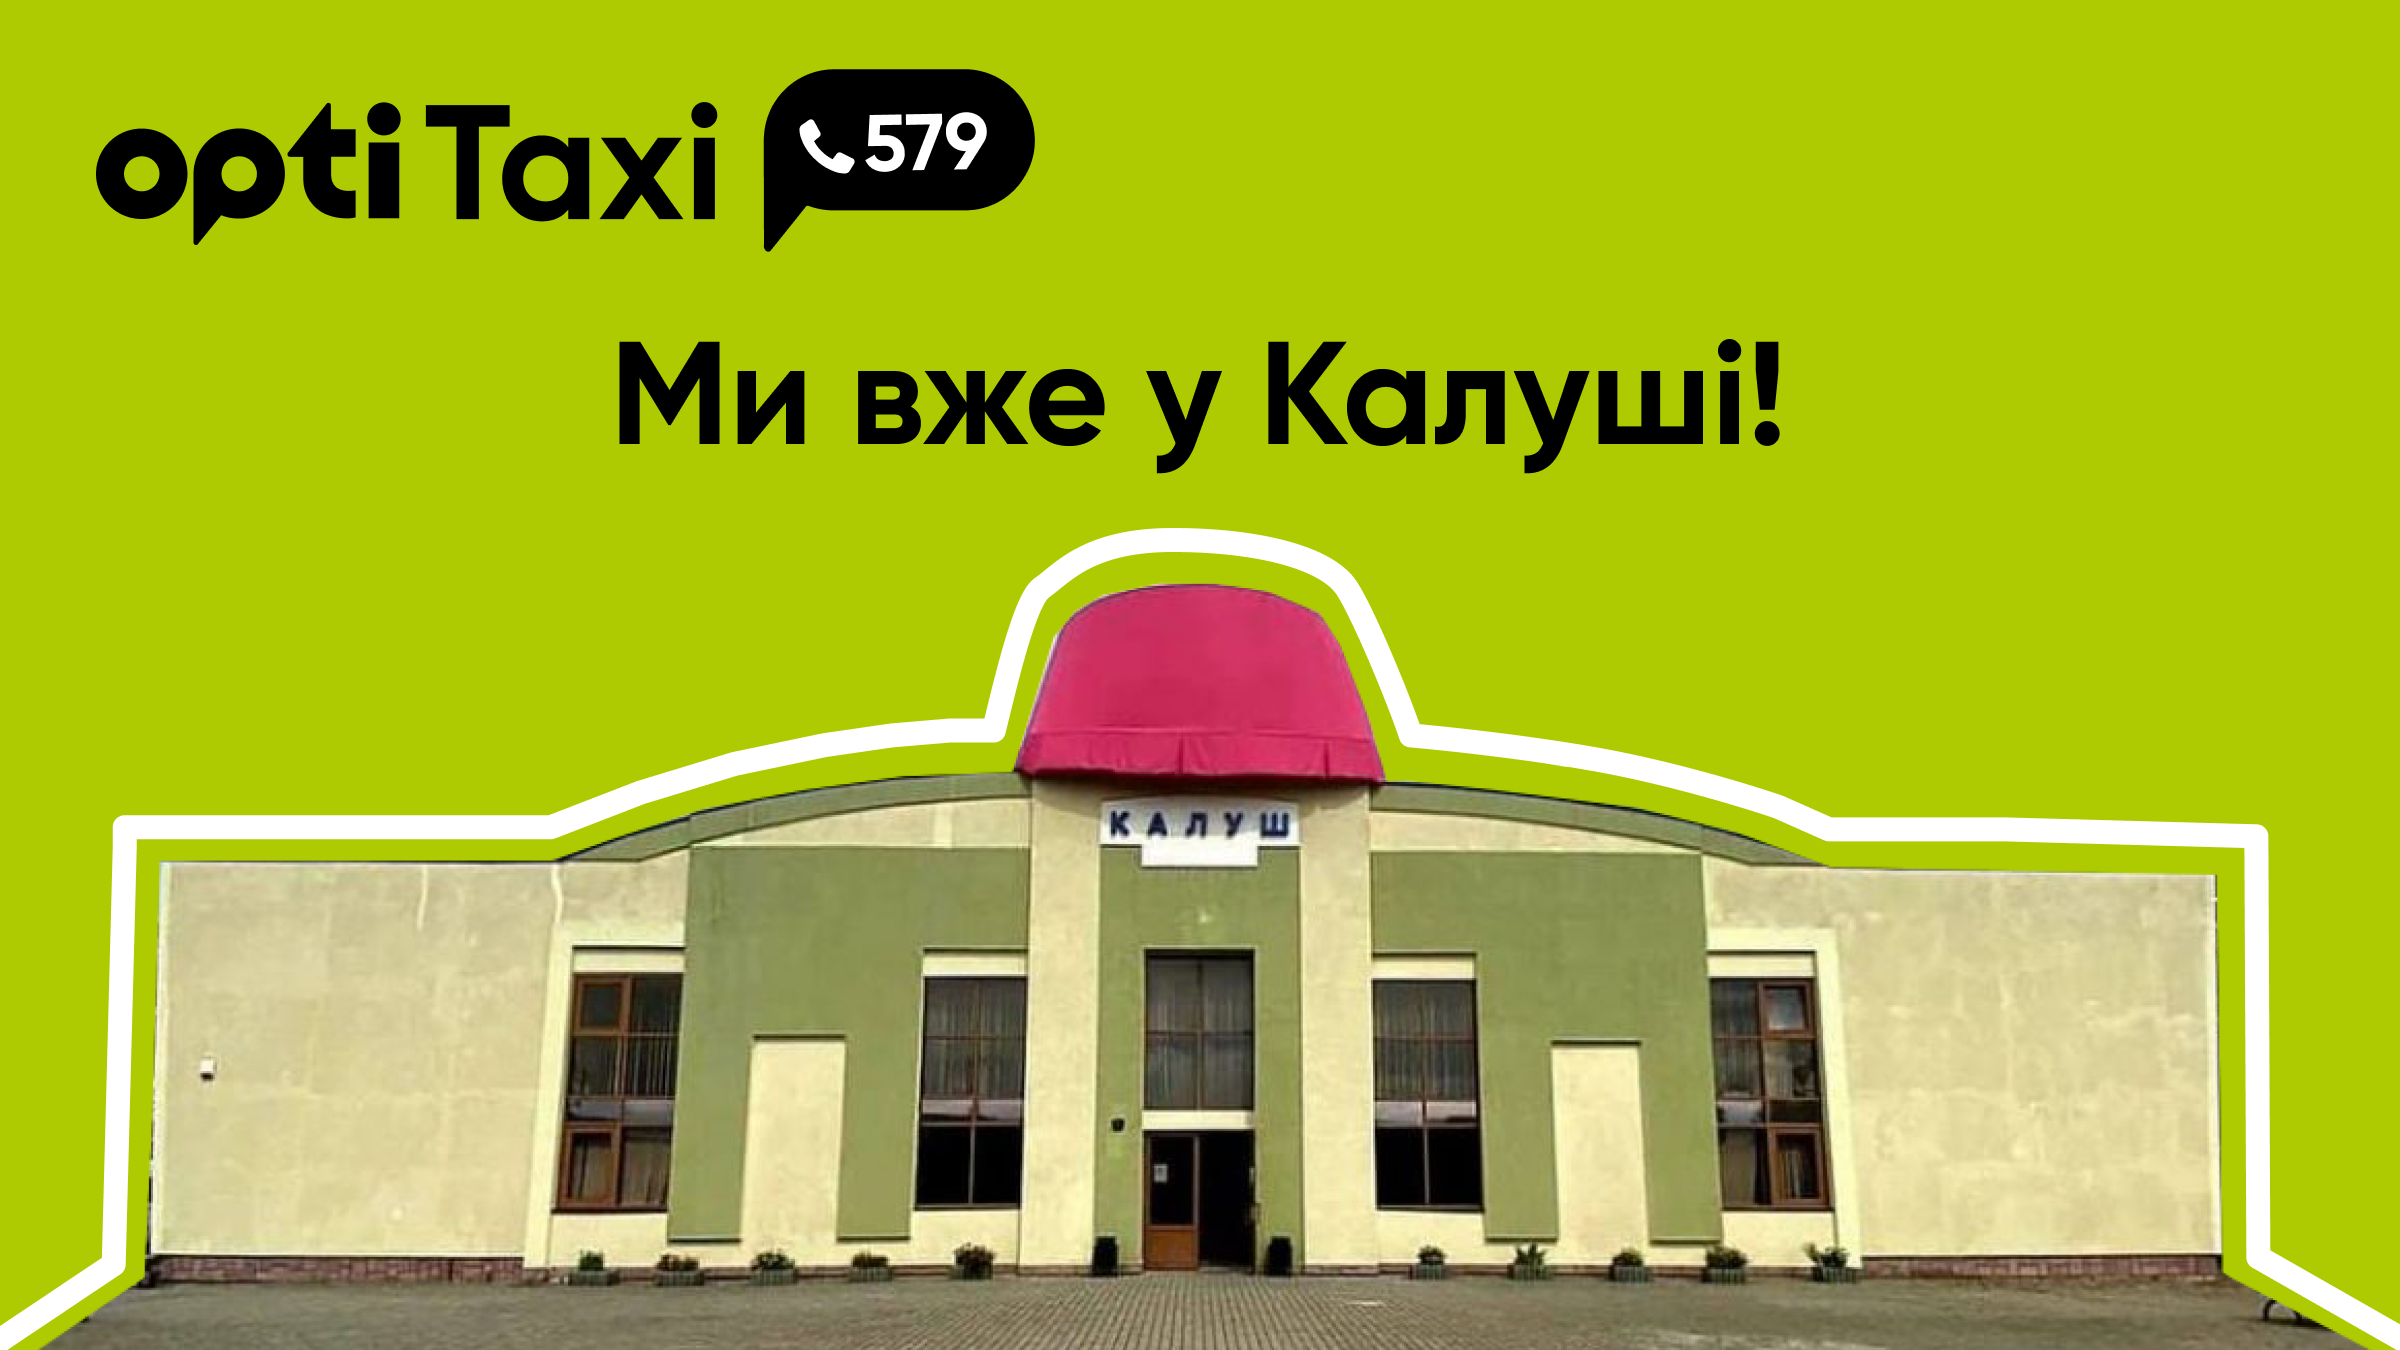 Opti Taxi працює у Калуші: якісний сервіс та оптимальний тариф